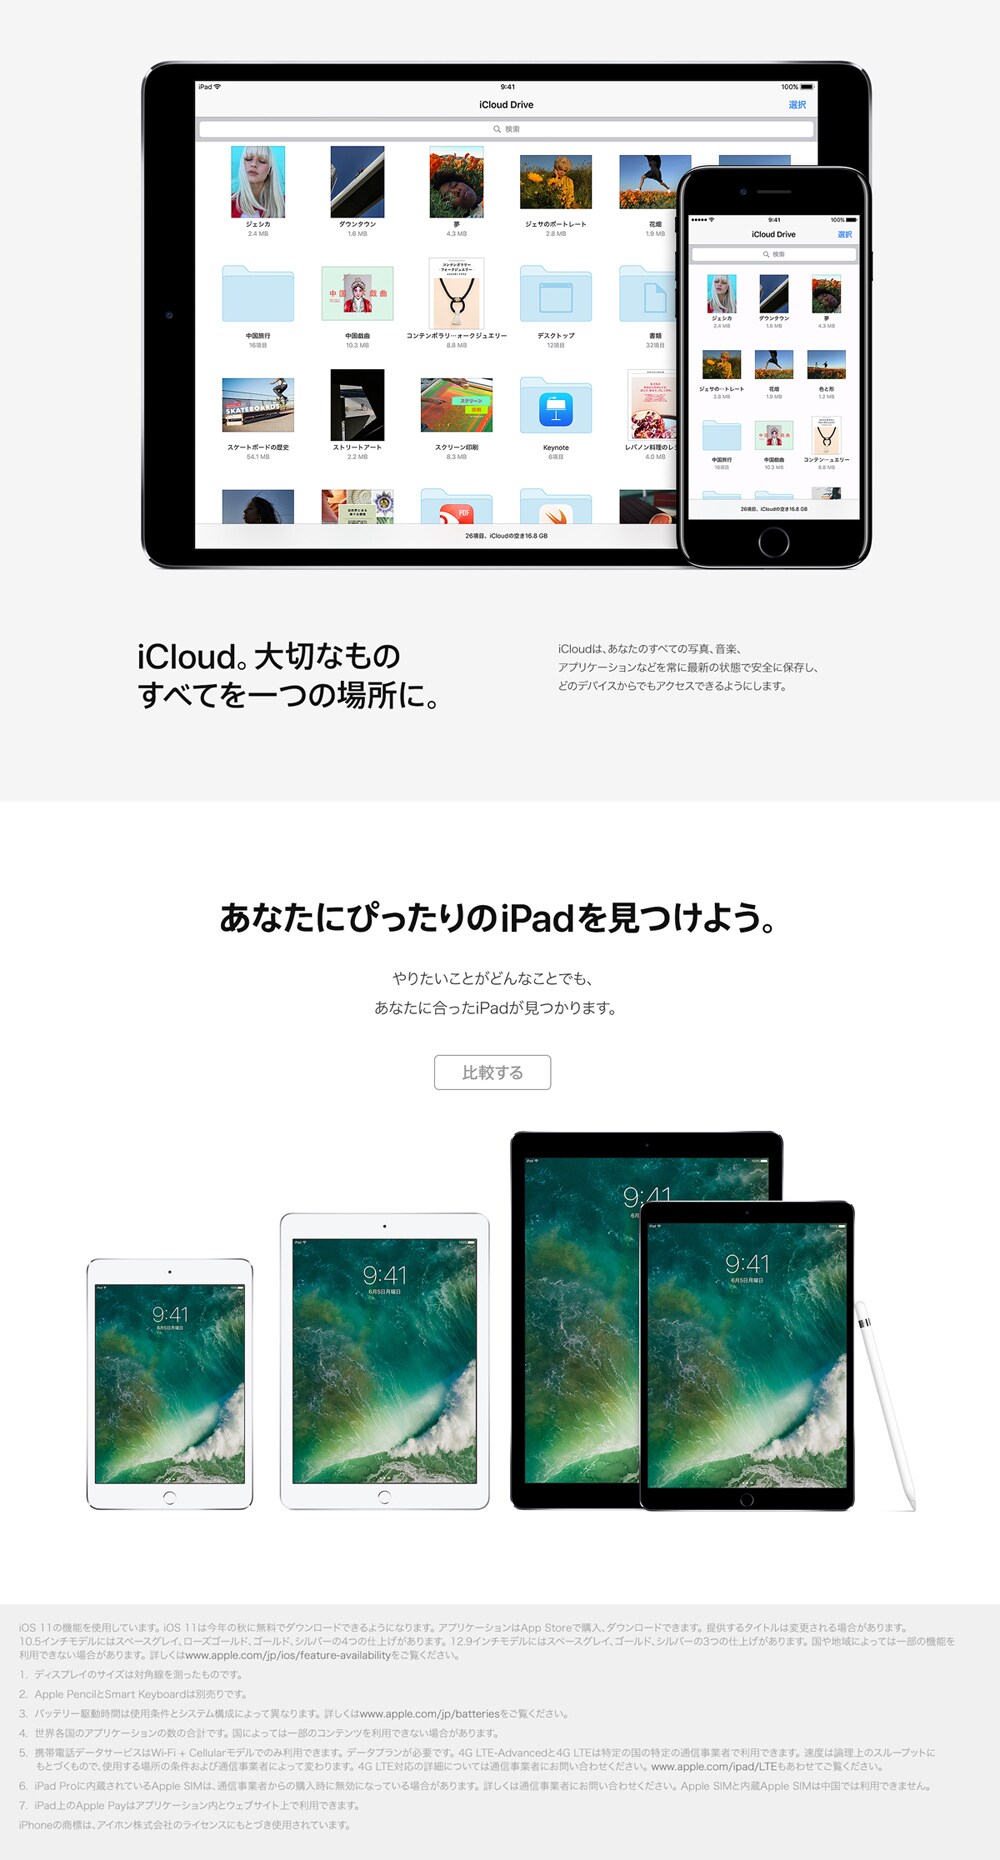 ヨドバシ.com - Apple iPad Pro すべてがもっとうまくできる。この一枚で。